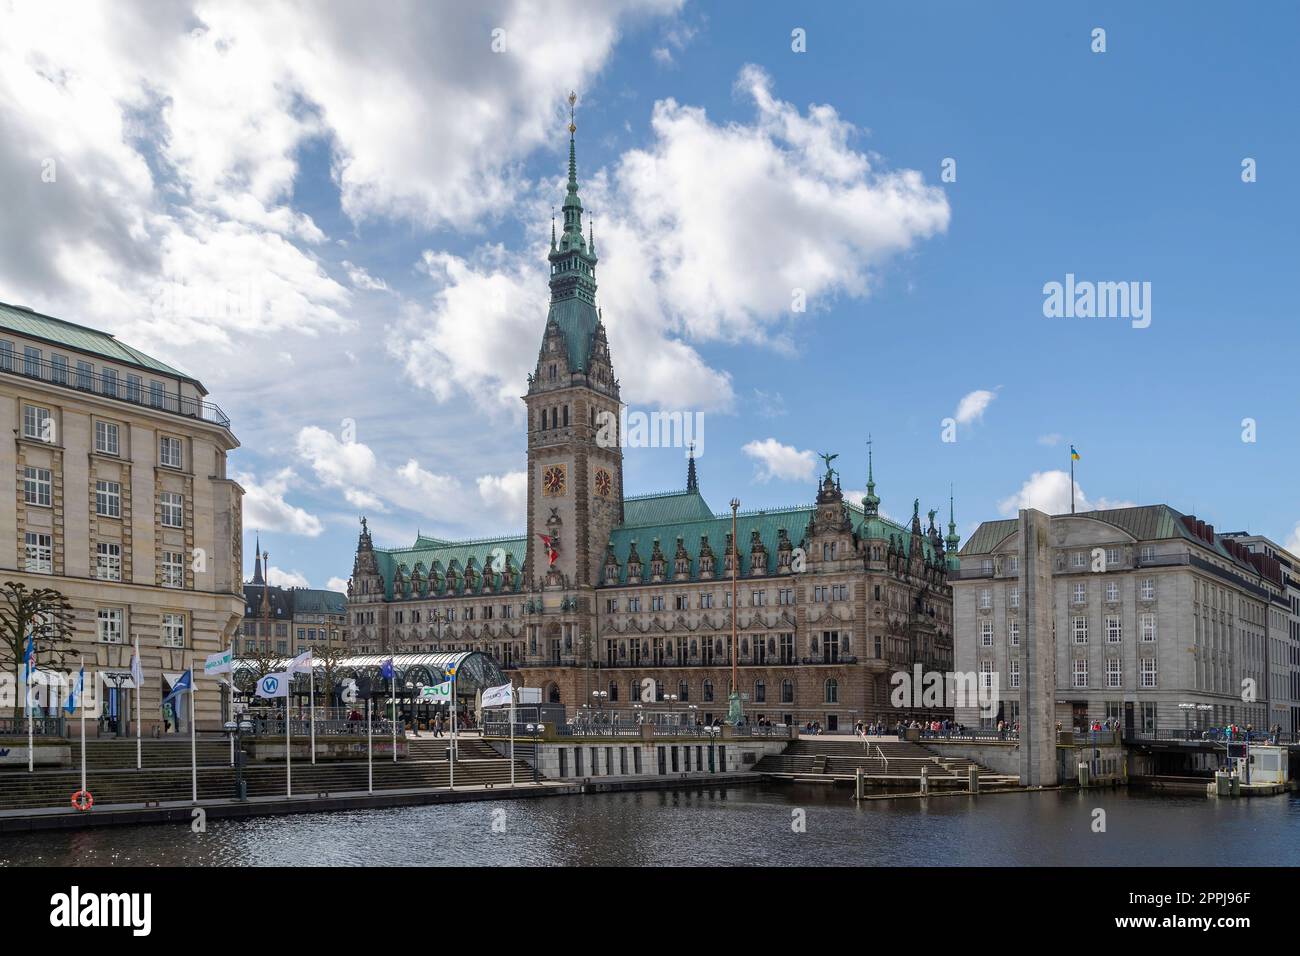 Mit Blick auf den Rathausmarkt mit dem Rathaus in Hamburg, Germay. Stockfoto